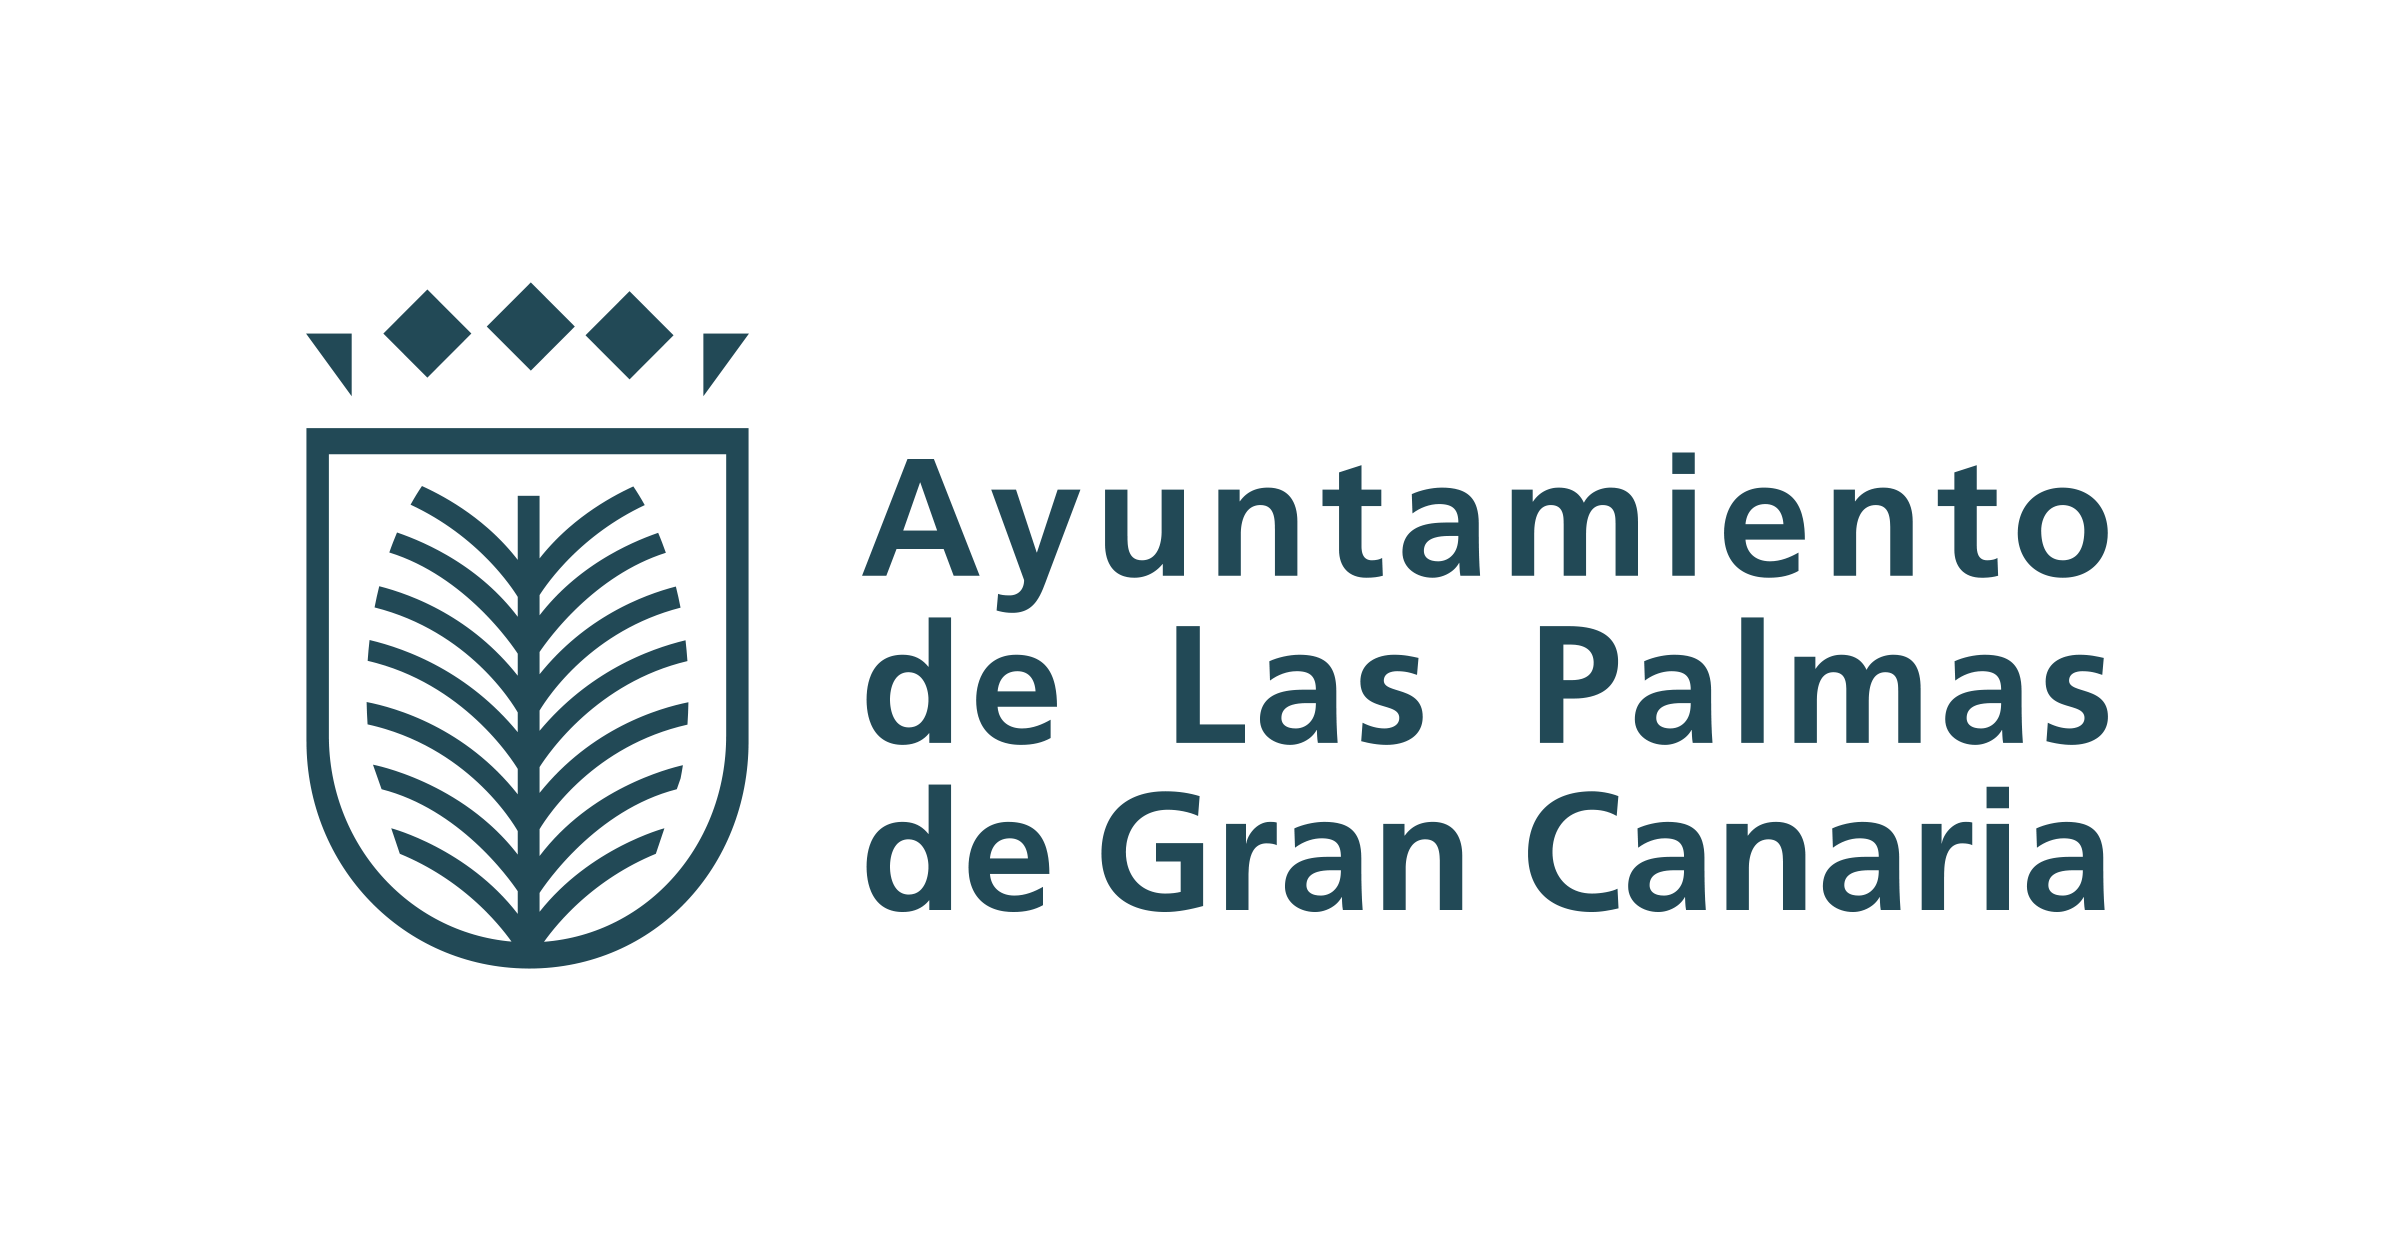 Inventia - Ayuntamiento de Las Palmas de Gran Canaria